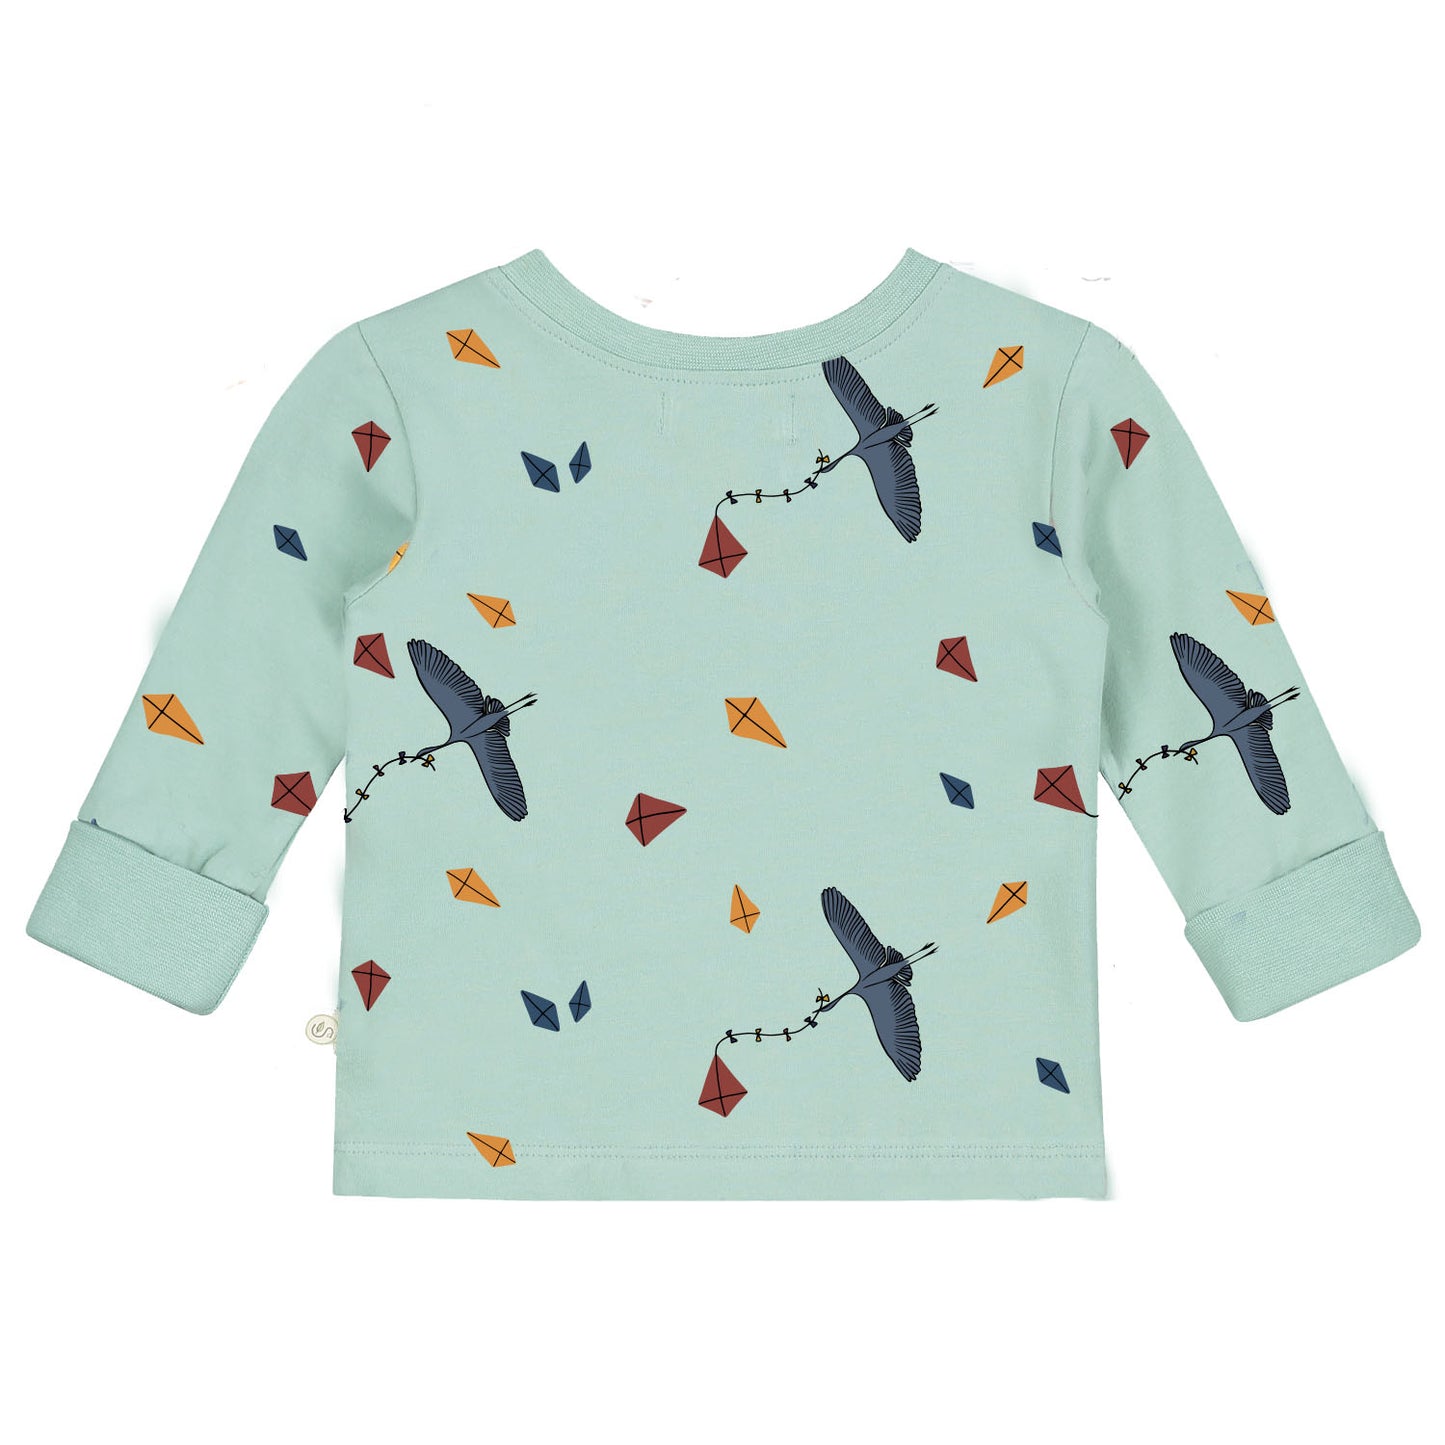 Langärmliges T-Shirt mit durchgehendem Drachen- und Vogeldruck